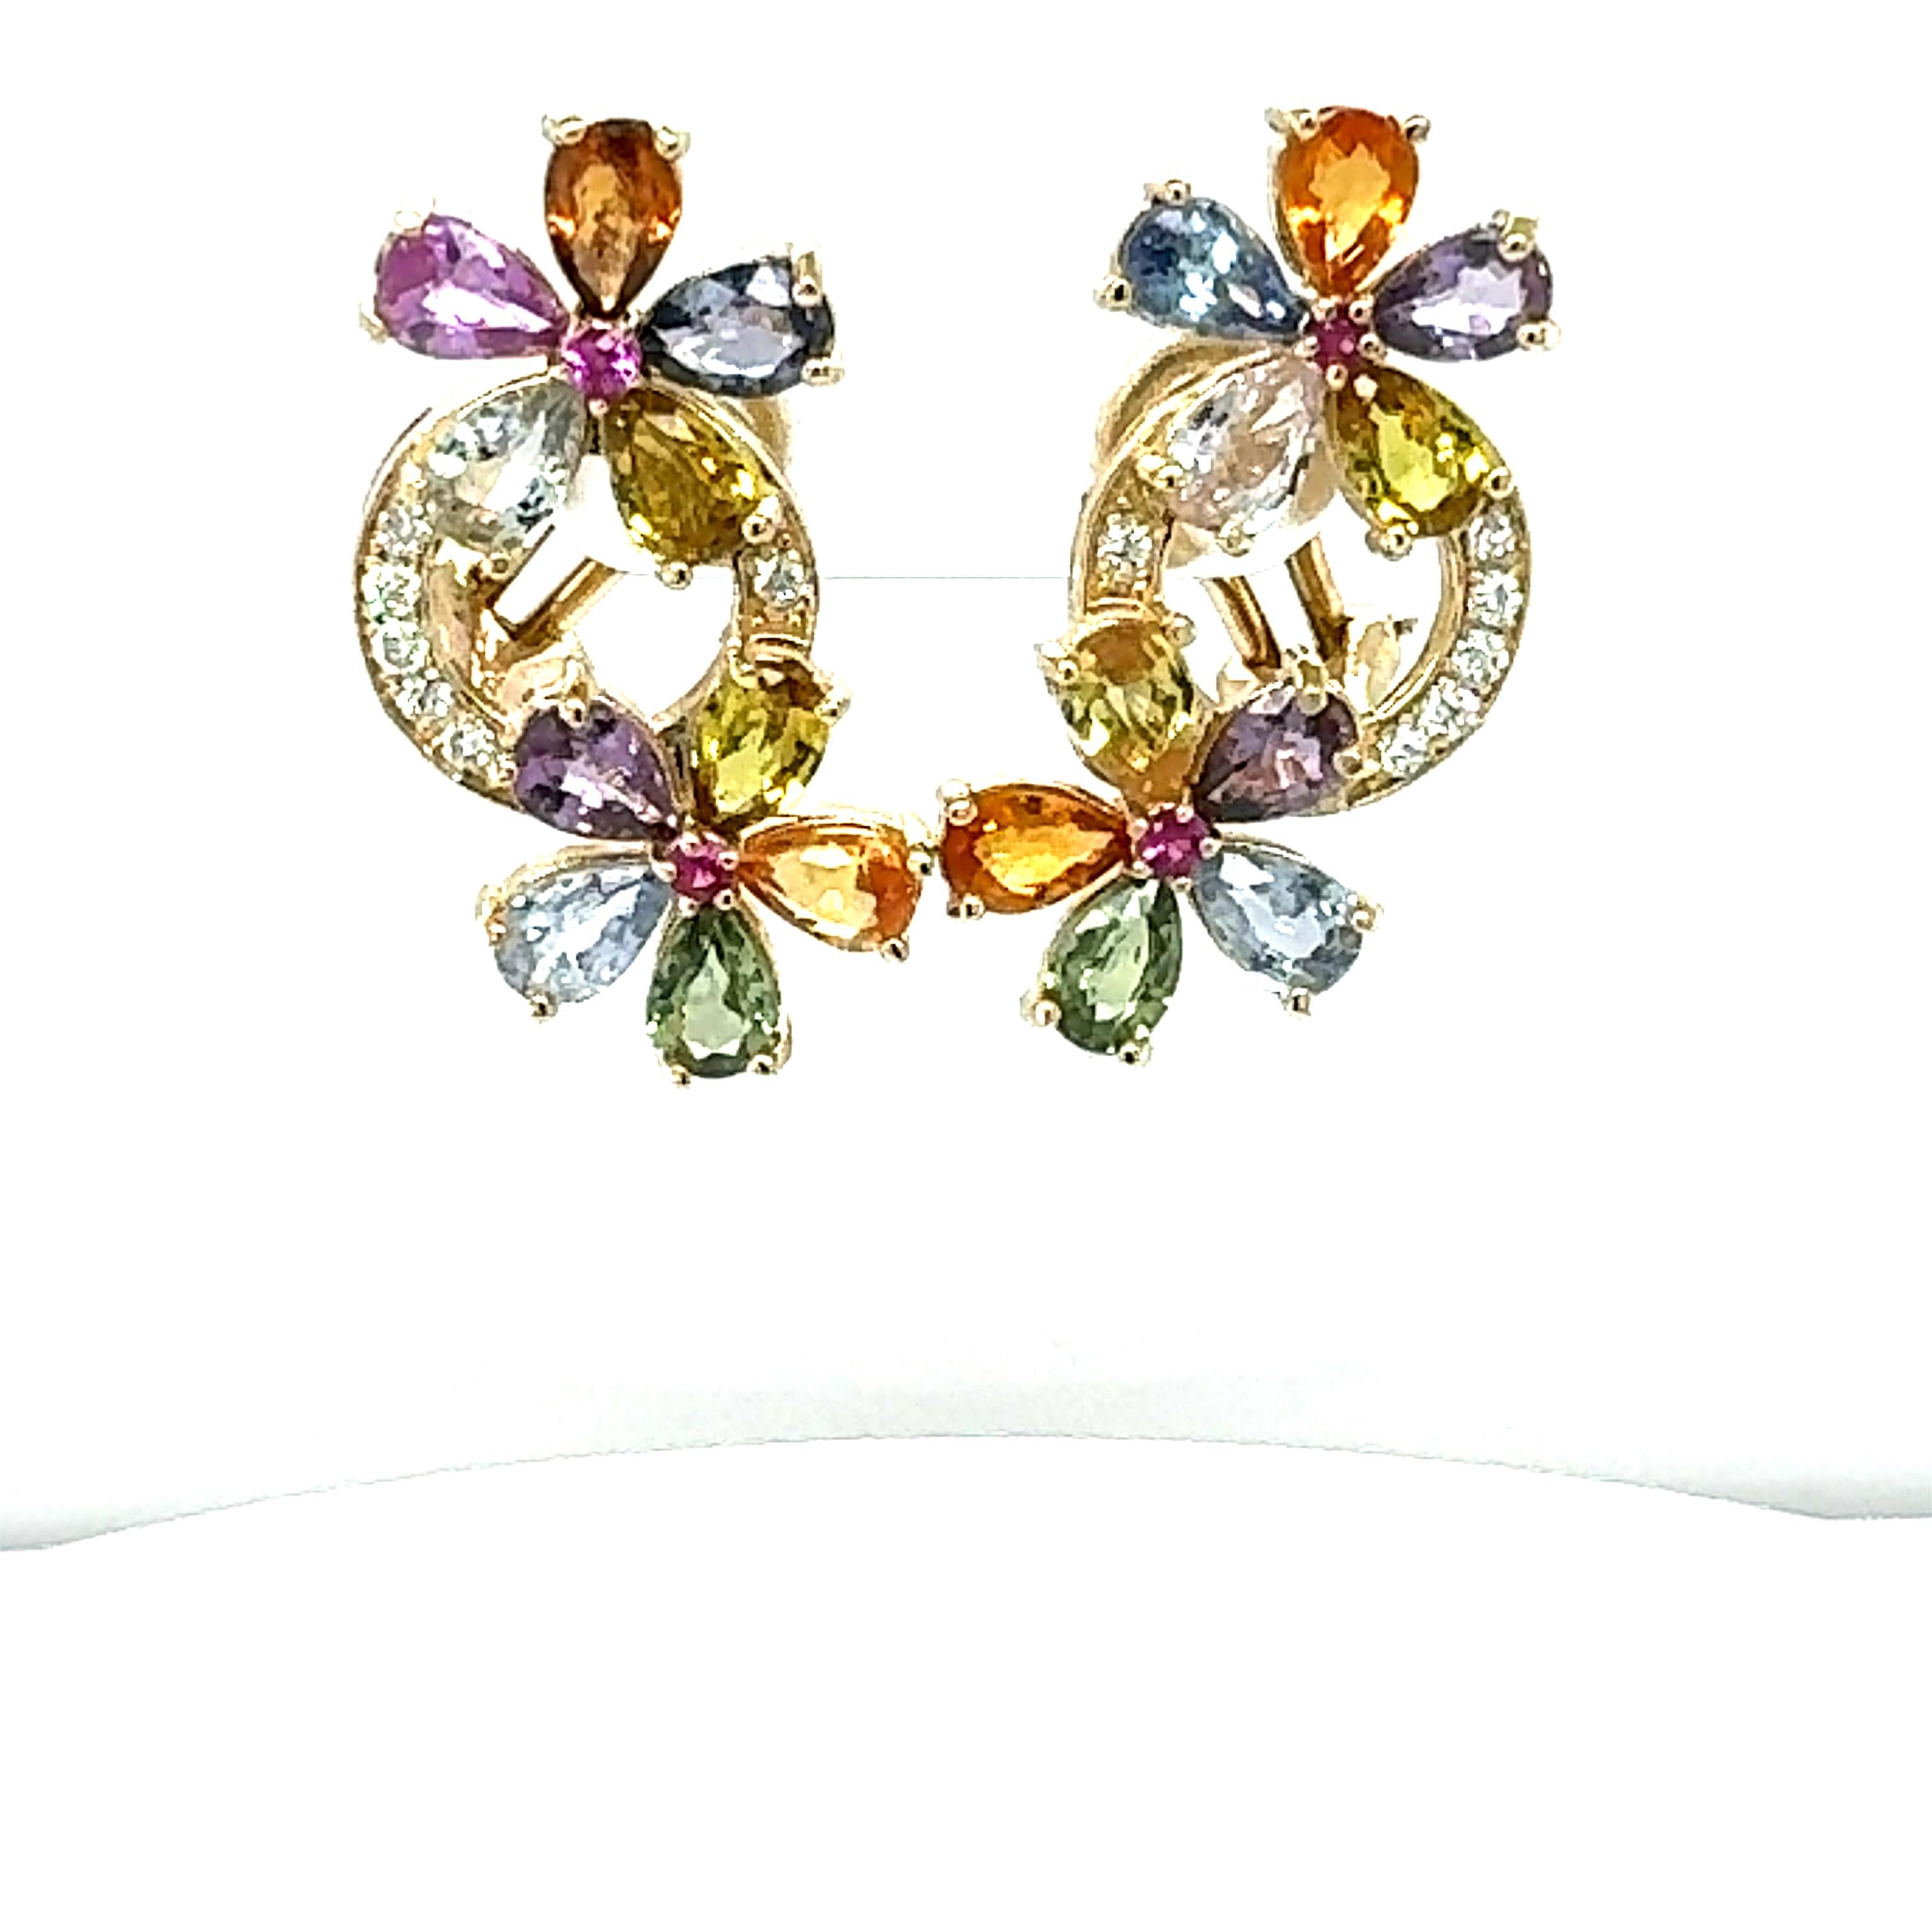 Einfach traumhafte Saphir-Ohrringe mit wunderschönen Regenbogenfarben, die jedes gewöhnliche Outfit zu etwas ganz Besonderem machen!

Diese Schönheiten passen wunderbar zu jedem Anlass! Auch als alltägliche und stilvolle Ergänzung zu Ihrer Sammlung.